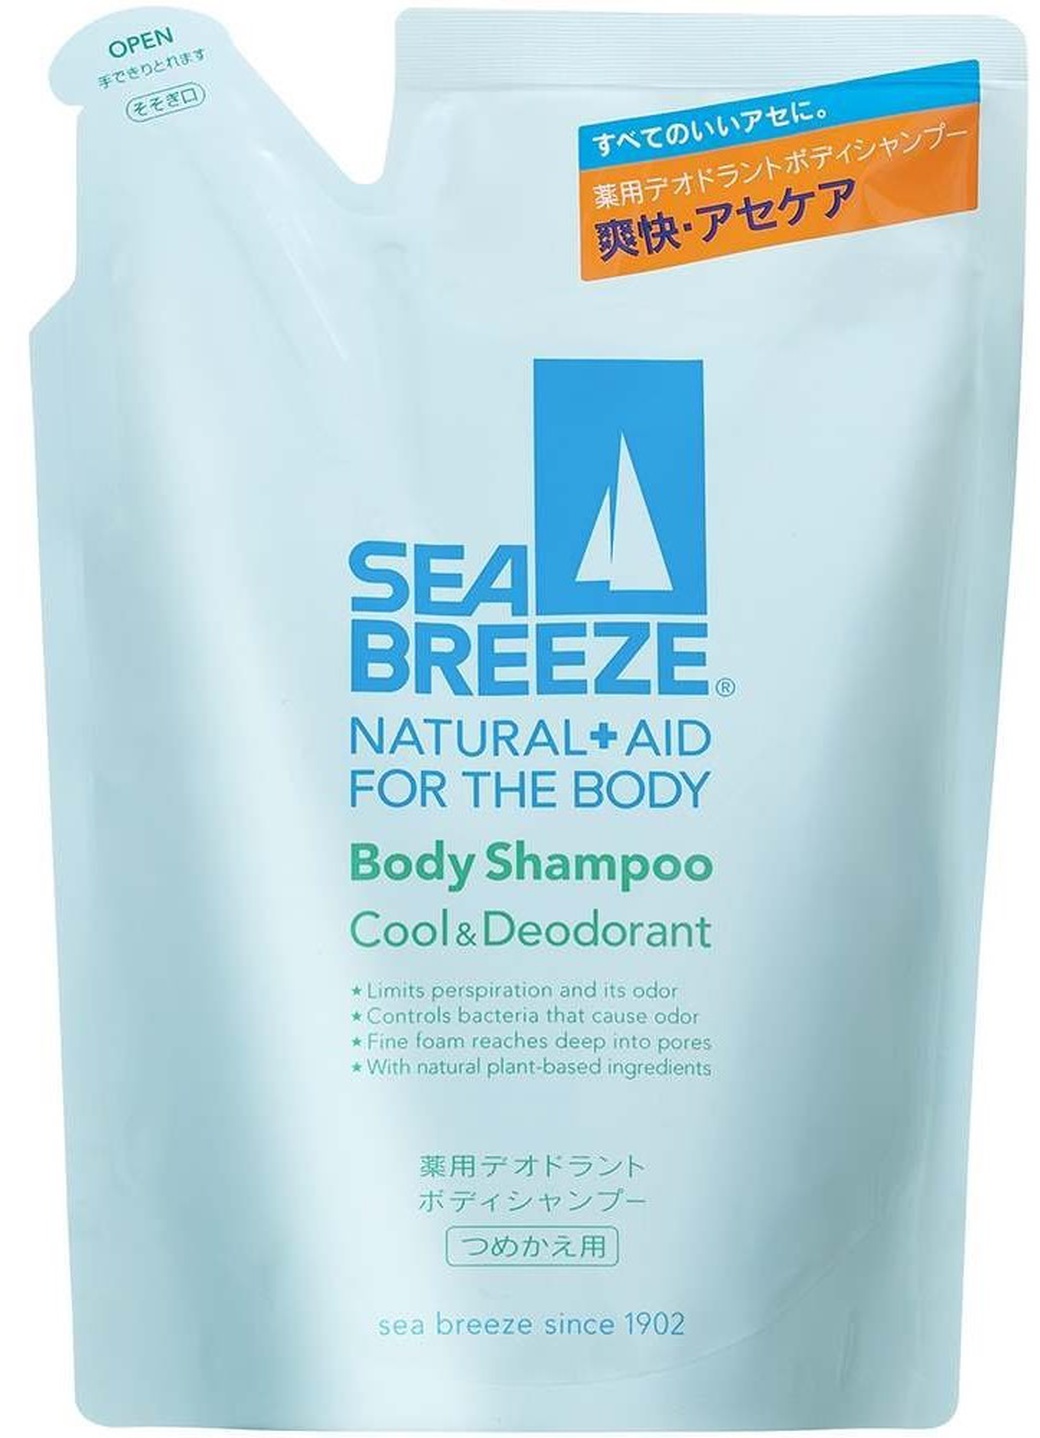 Shiseido "Sea Breeze" Гель для душа, с охлаждающим и дезодорирующим эффектом, запасной блок, 400 мл фото